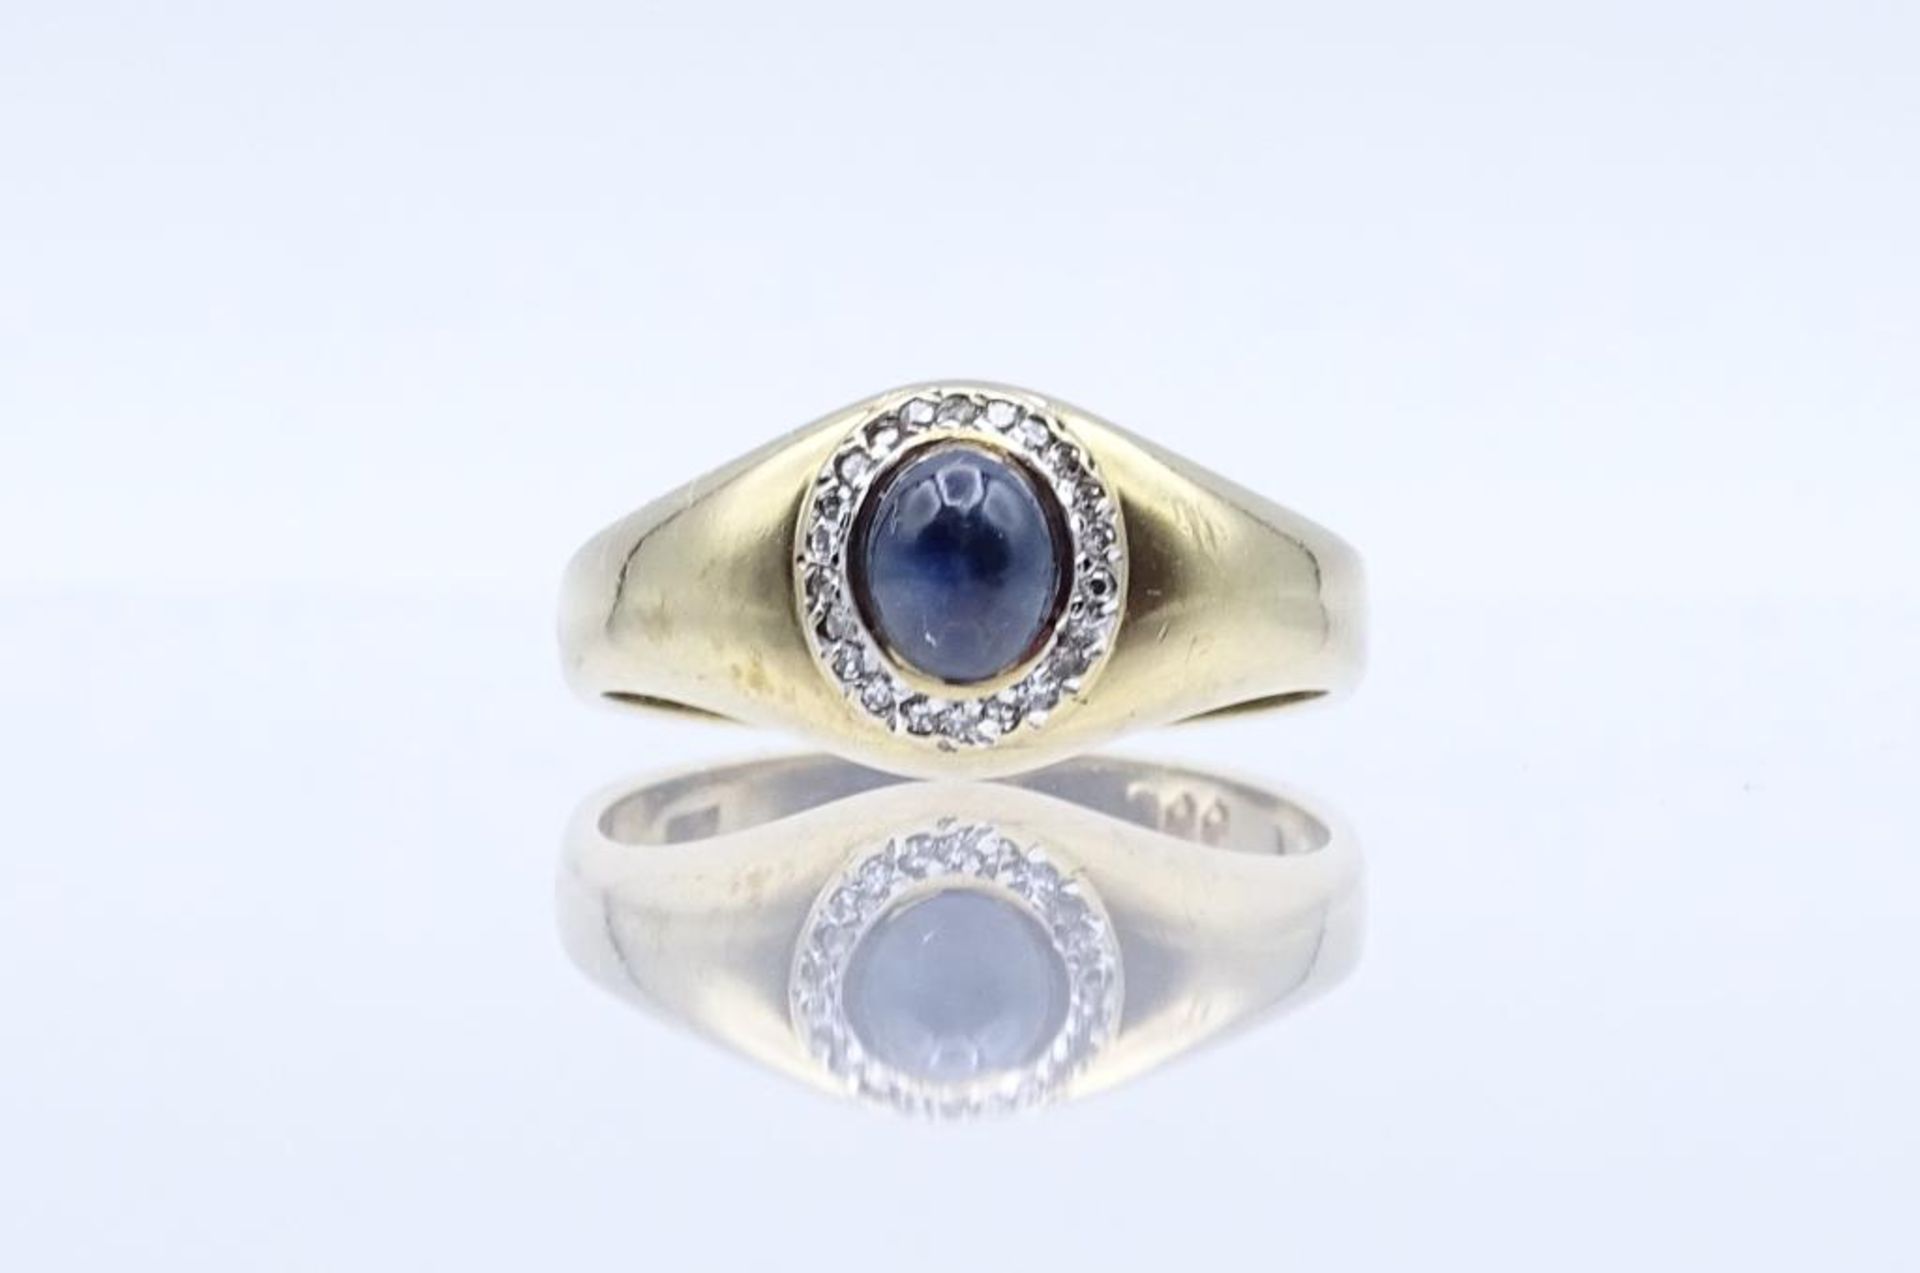 333er GG Ring mit Saphir Cabochon und Diamanten, 3,0gr., RG 57- - -22.61 % buyer's premium on the